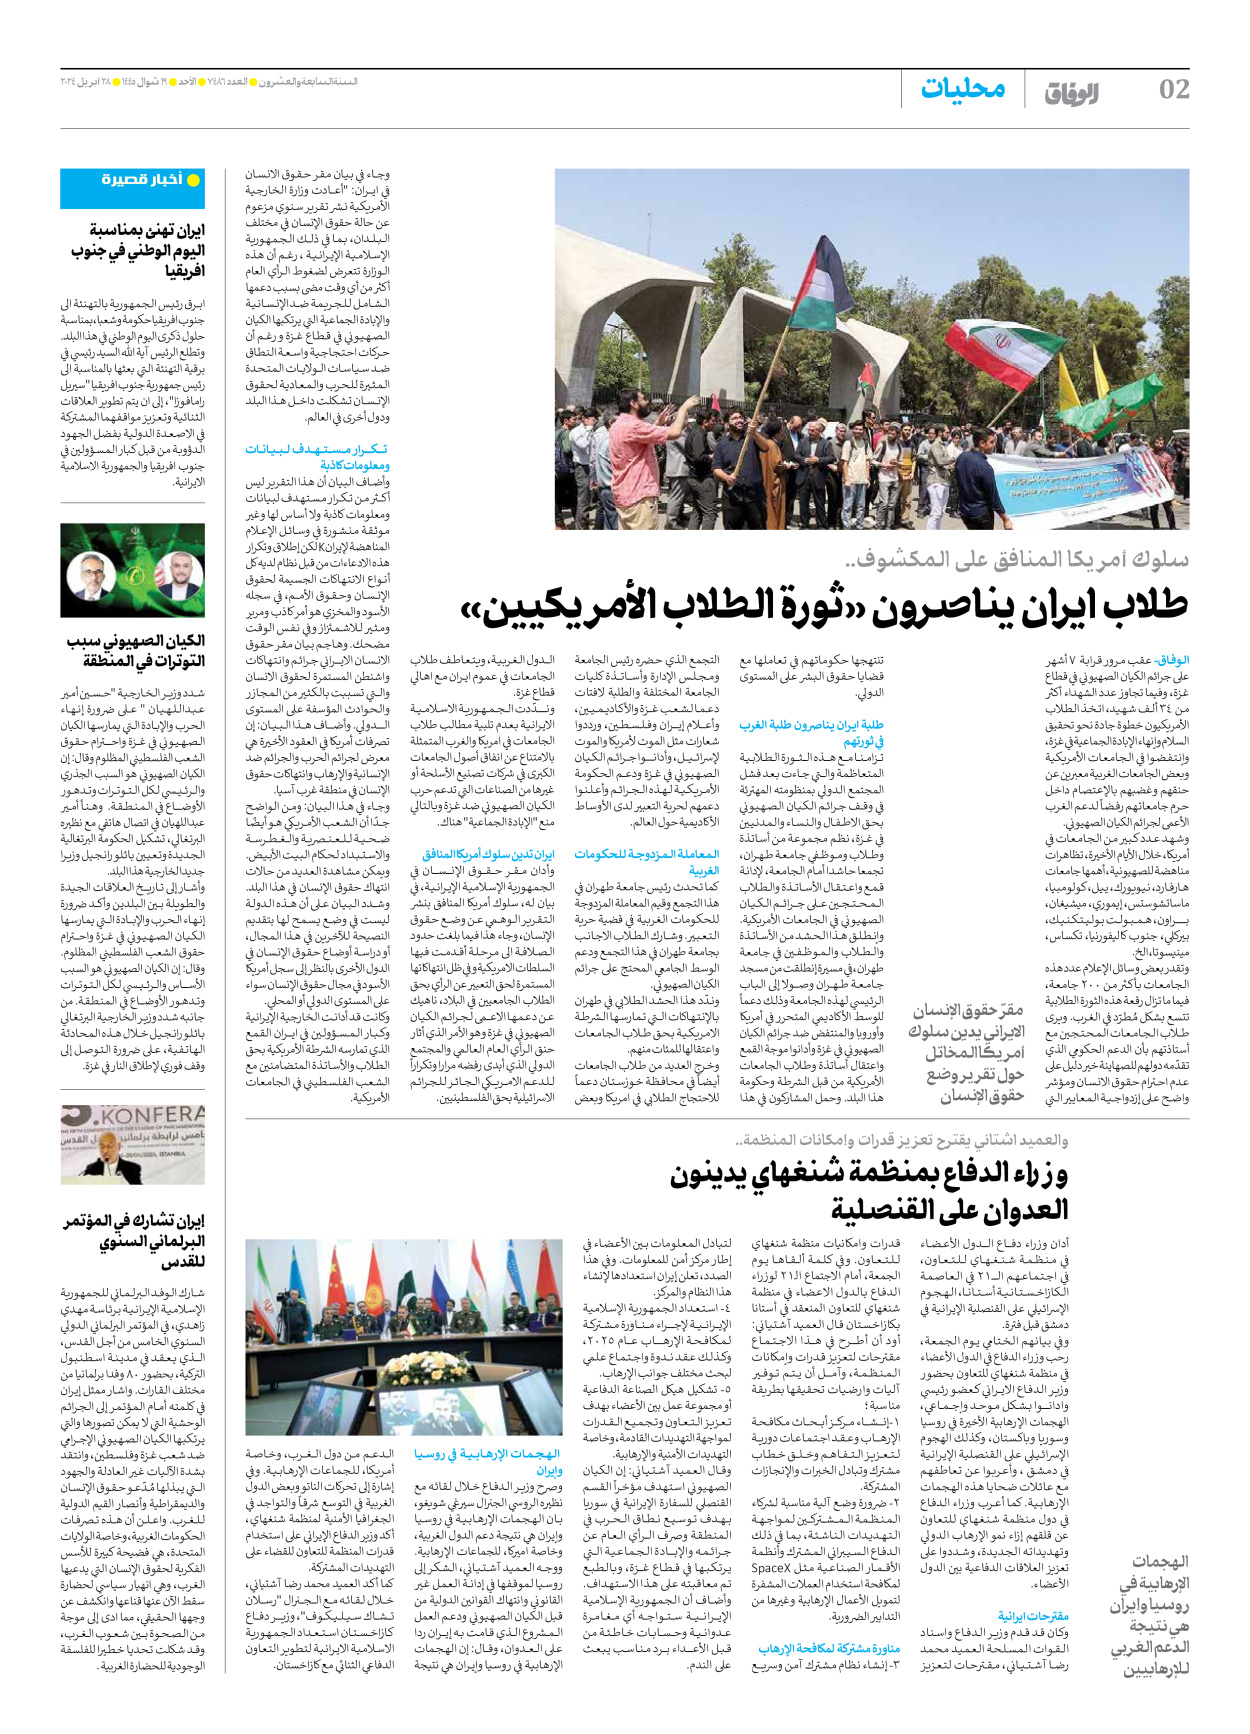 صحیفة ایران الدولیة الوفاق - العدد سبعة آلاف وأربعمائة وستة وثمانون - ٢٨ أبريل ٢٠٢٤ - الصفحة ۲